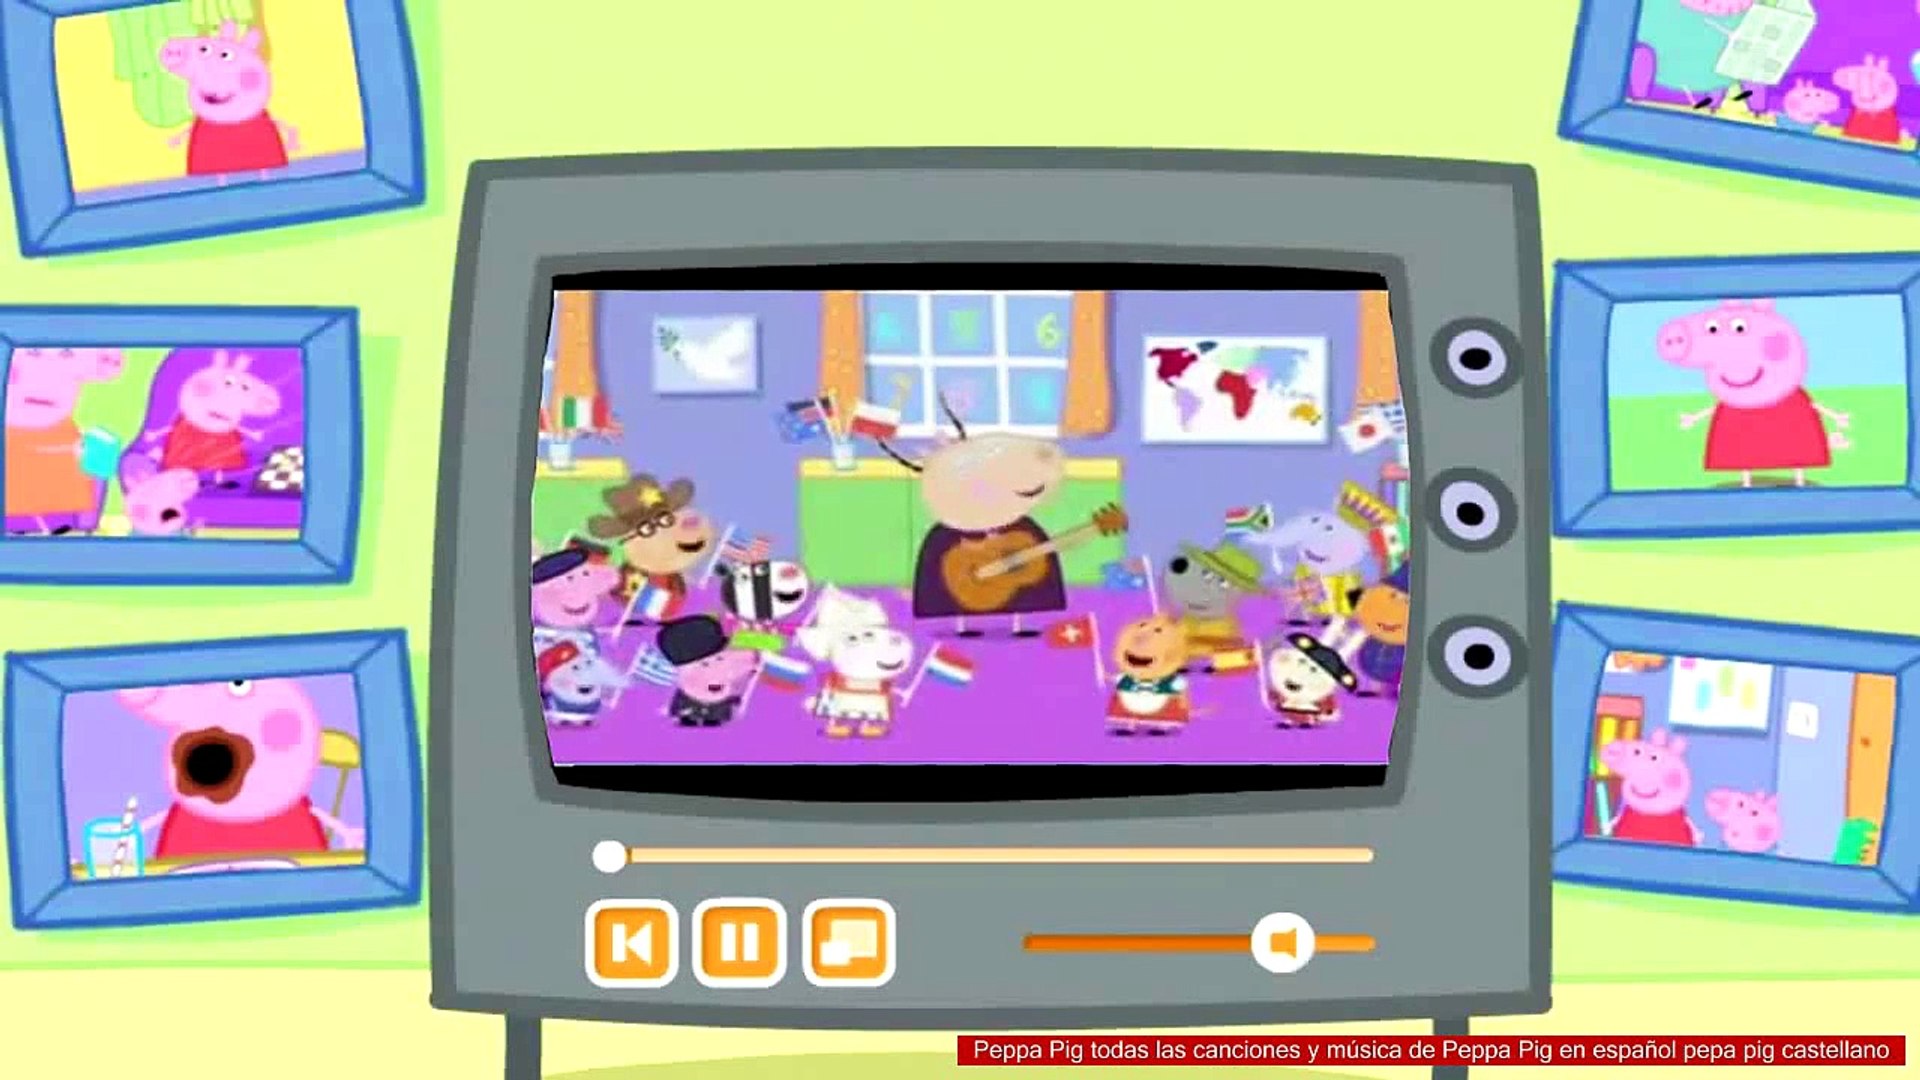 Peppa Pig todas las canciones y música de Peppa Pig en español pepa pig  castellano - video Dailymotion